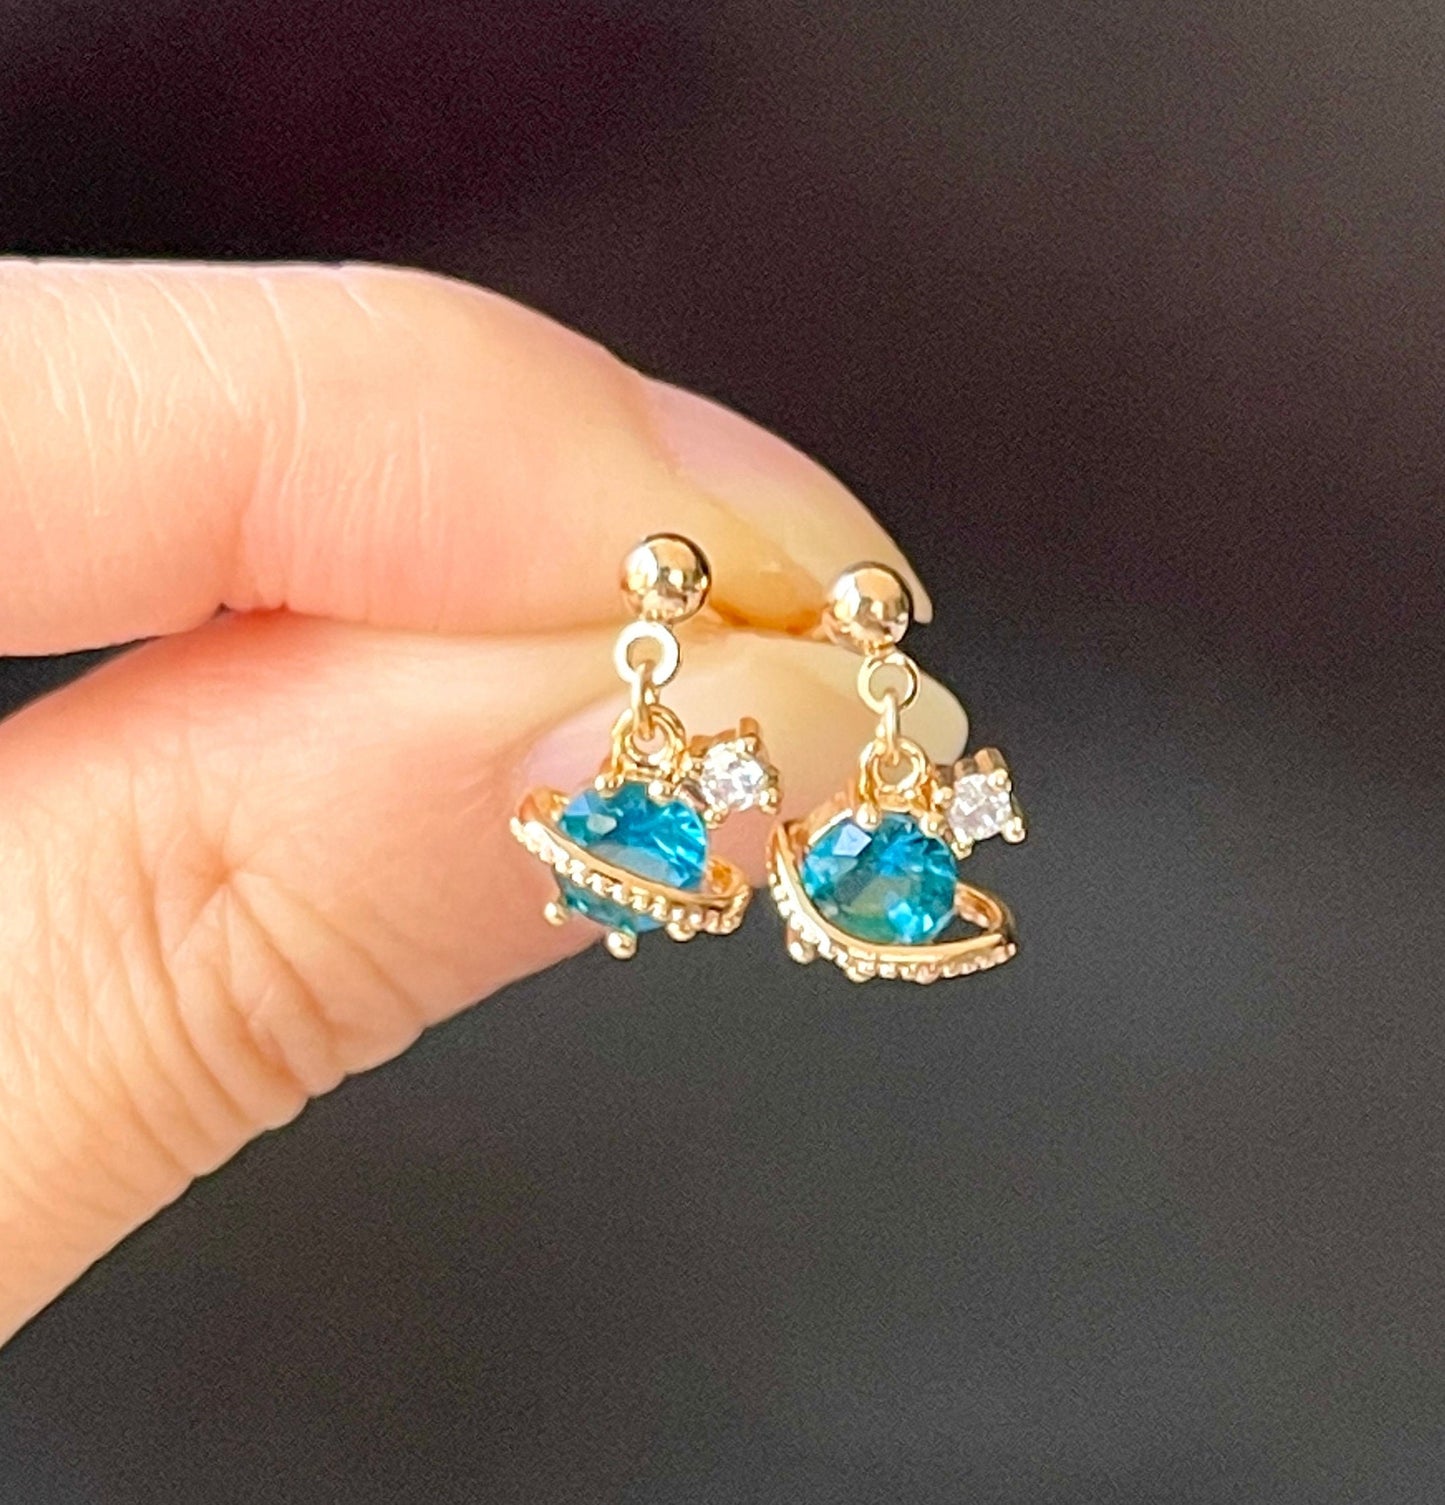 Blue Saphhire Earrings, Saturn Earrings, 14K Gold filled Lace Stud, Planet Jewelry, 3D Earrings, Celestial Galaxy Earrings, y2k Cute Gift